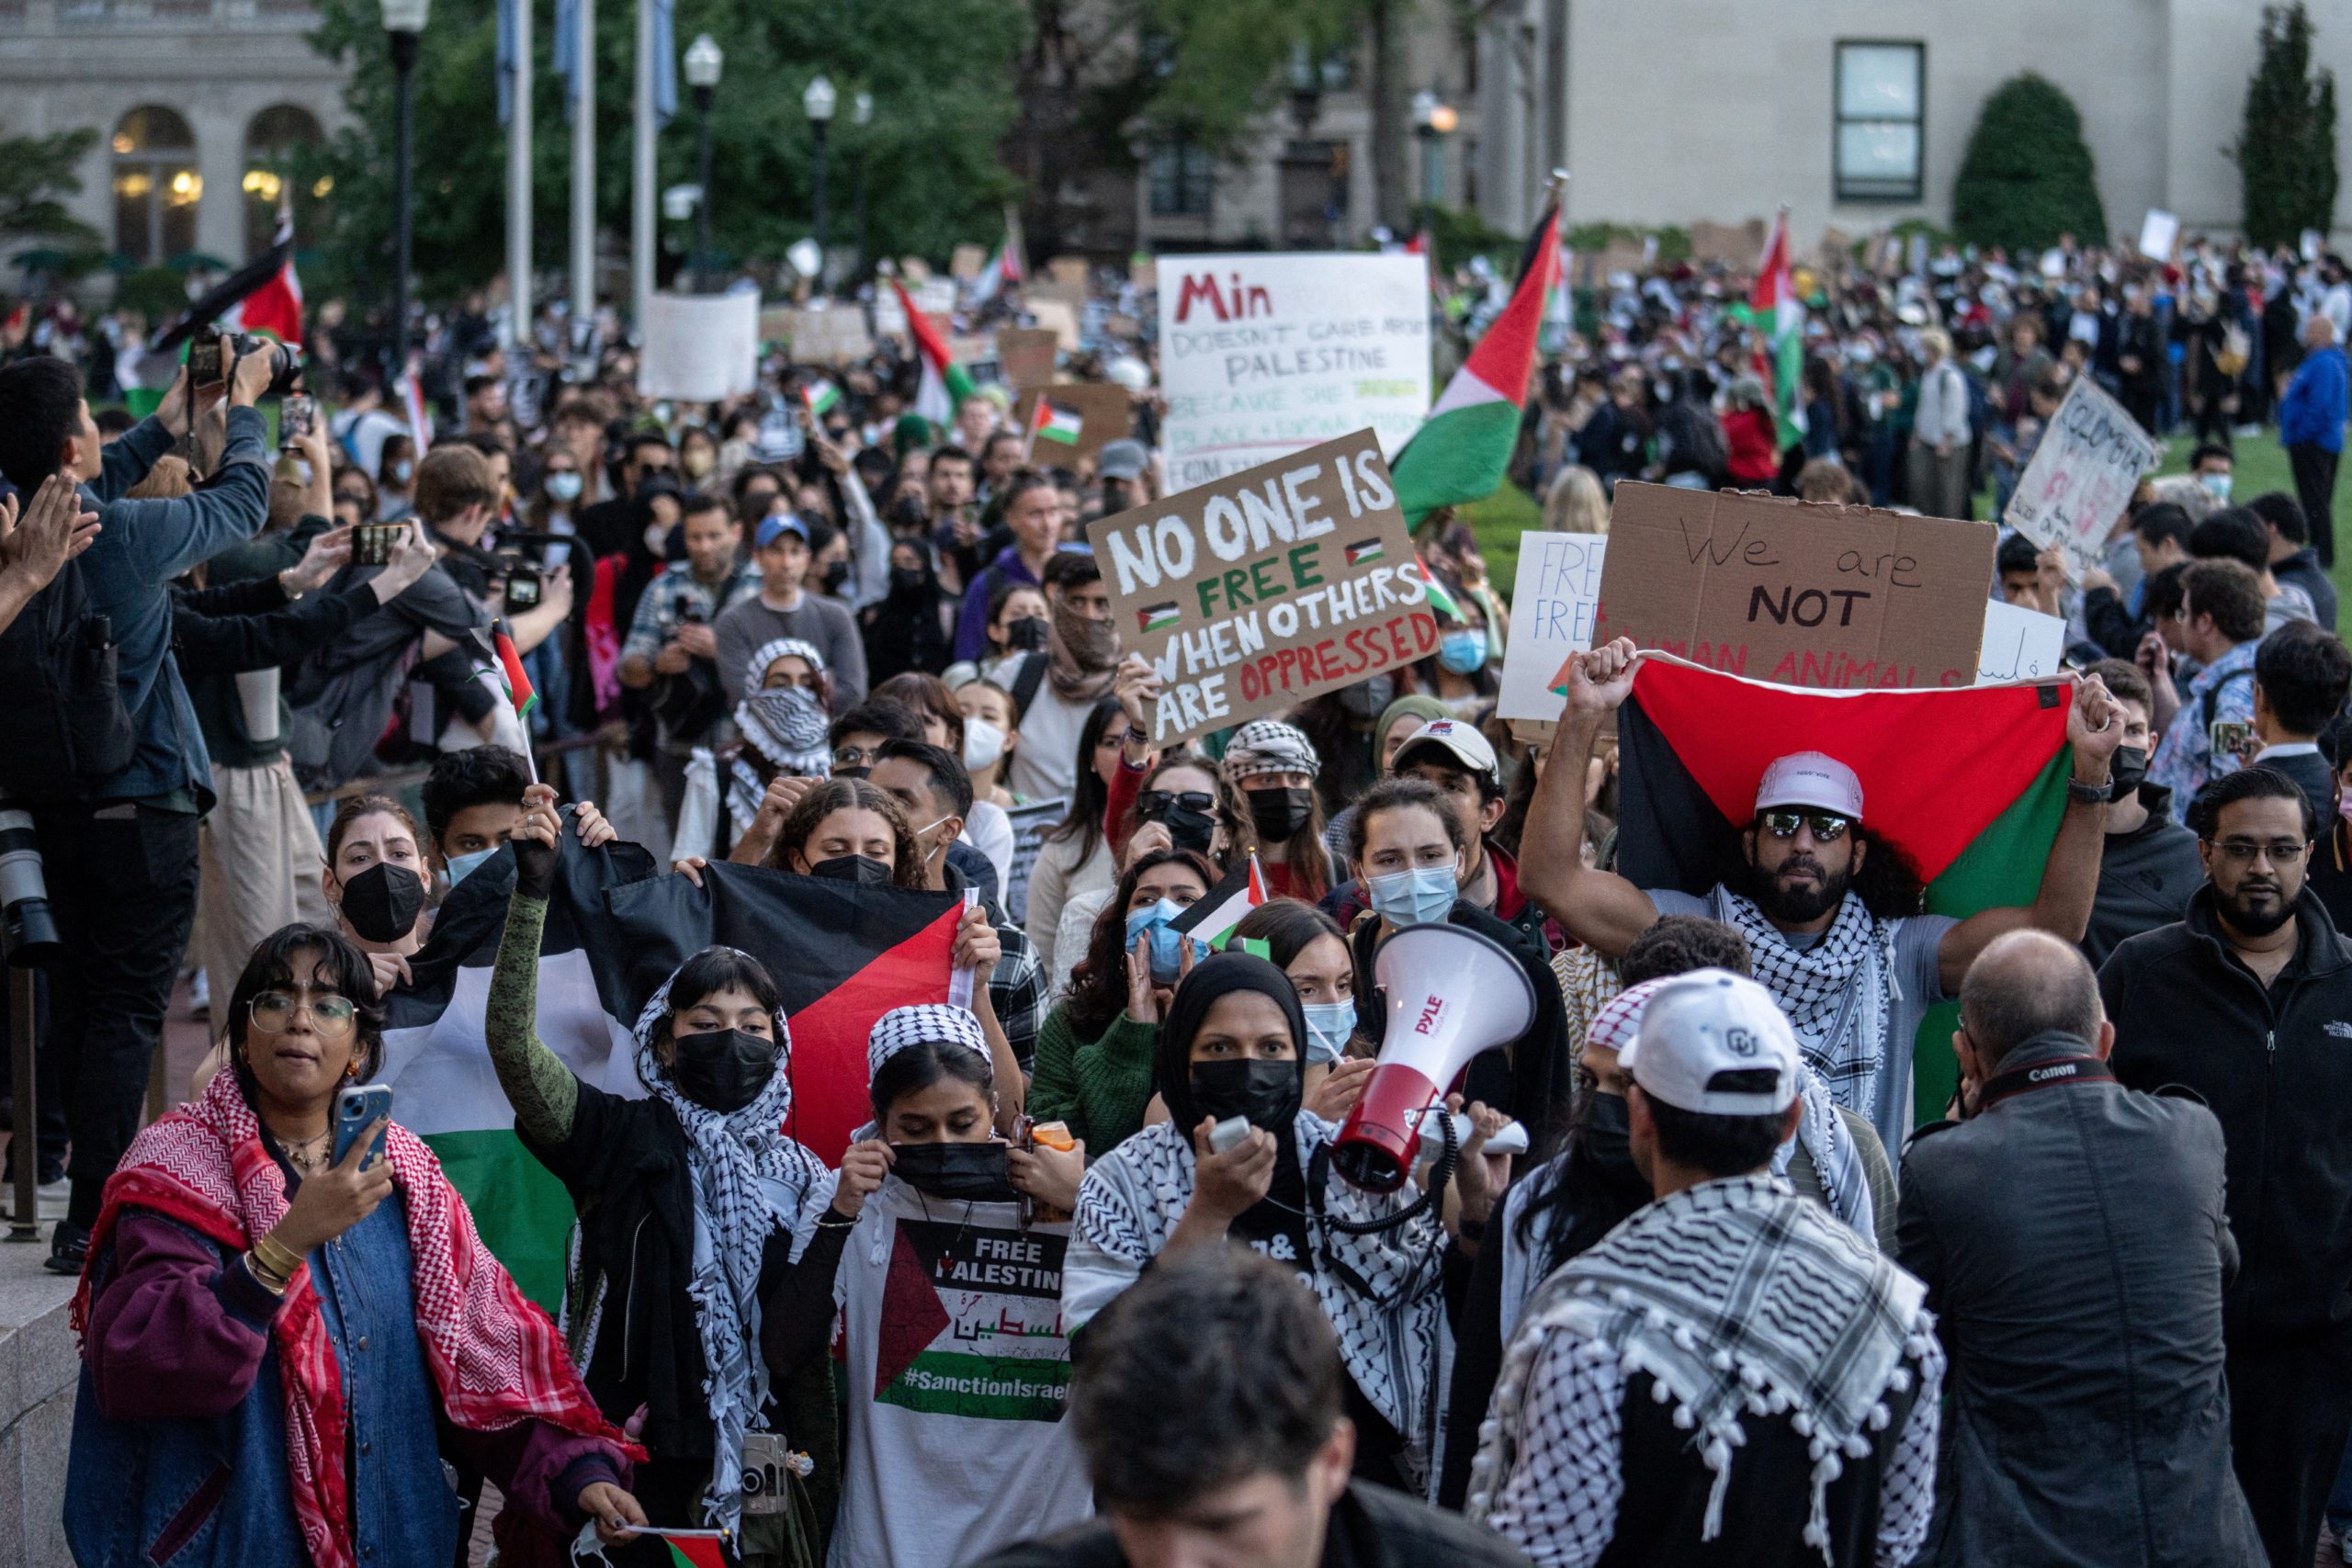 طلاب مؤيدون للفلسطينيين يشاركون في احتجاج لدعم الفلسطينيين وسط الصراع المستمر في غزة، في جامعة كولومبيا -رويترز